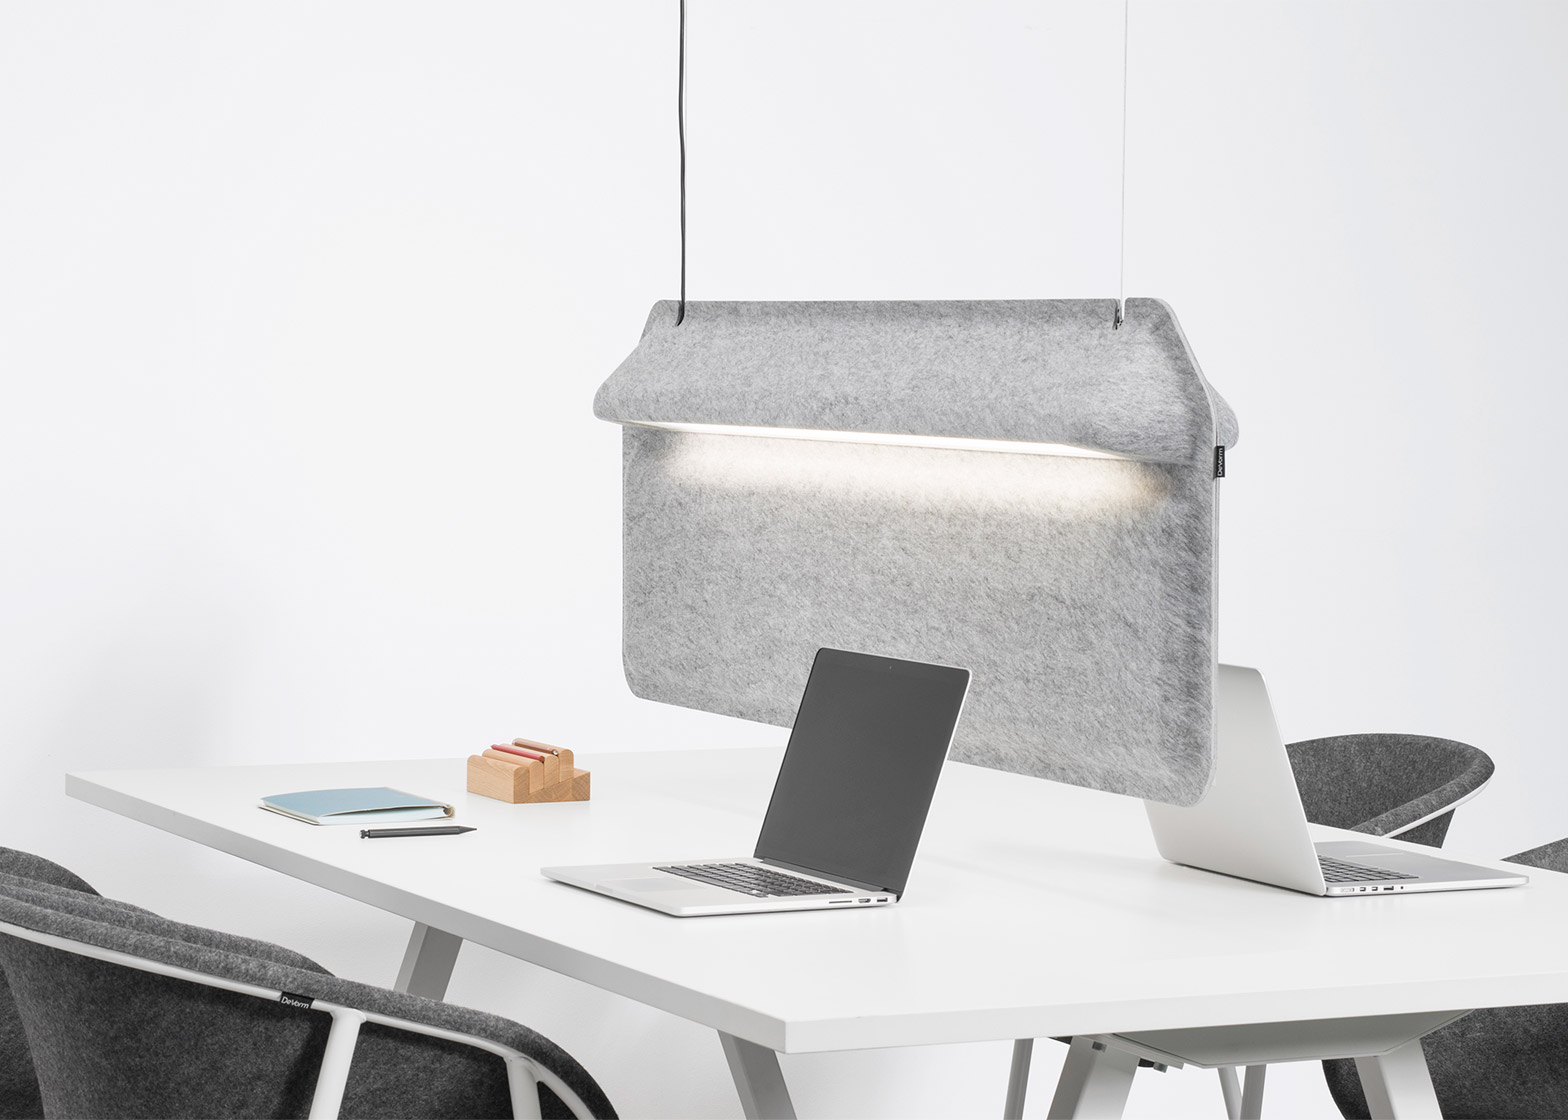 De Vorm S Workspace Divider Lamp Shields Users